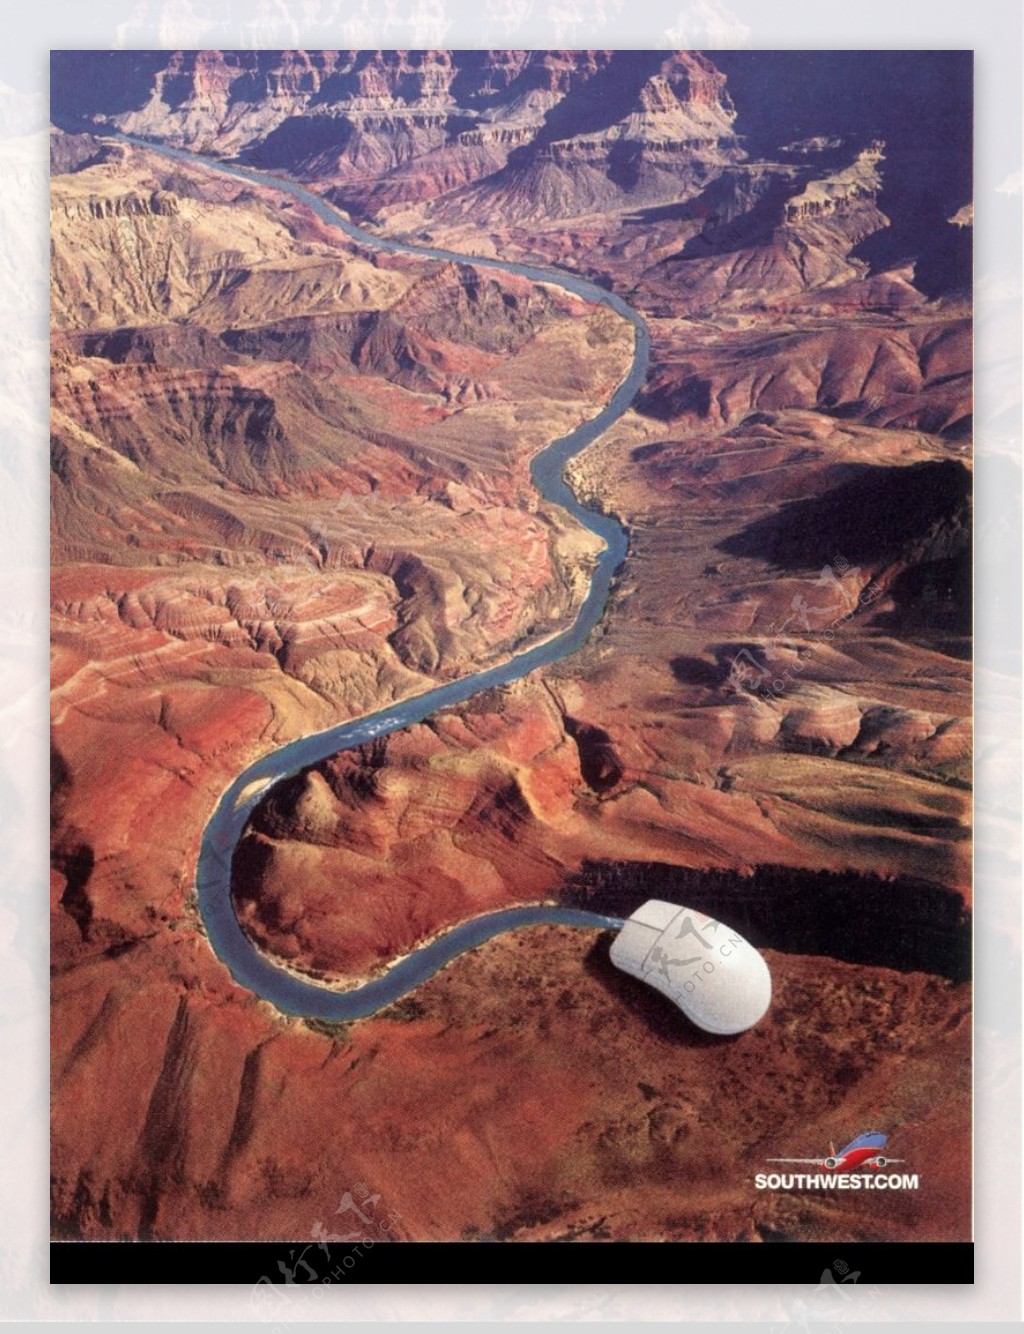 世界广告海报设计年鉴200730122